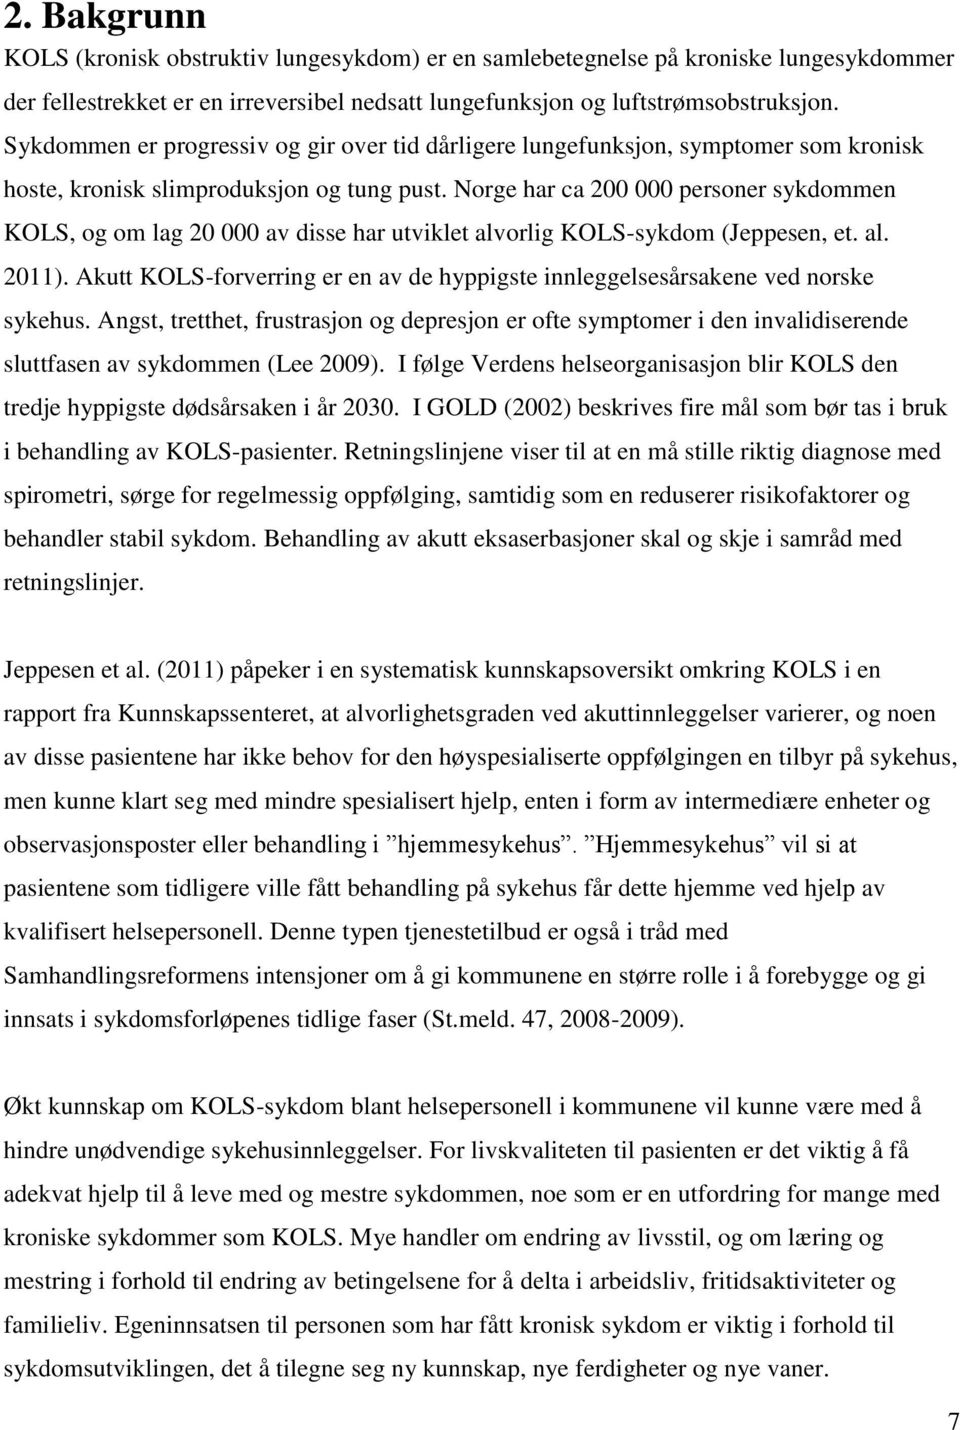 Norge har ca 200 000 personer sykdommen KOLS, og om lag 20 000 av disse har utviklet alvorlig KOLS-sykdom (Jeppesen, et. al. 2011).